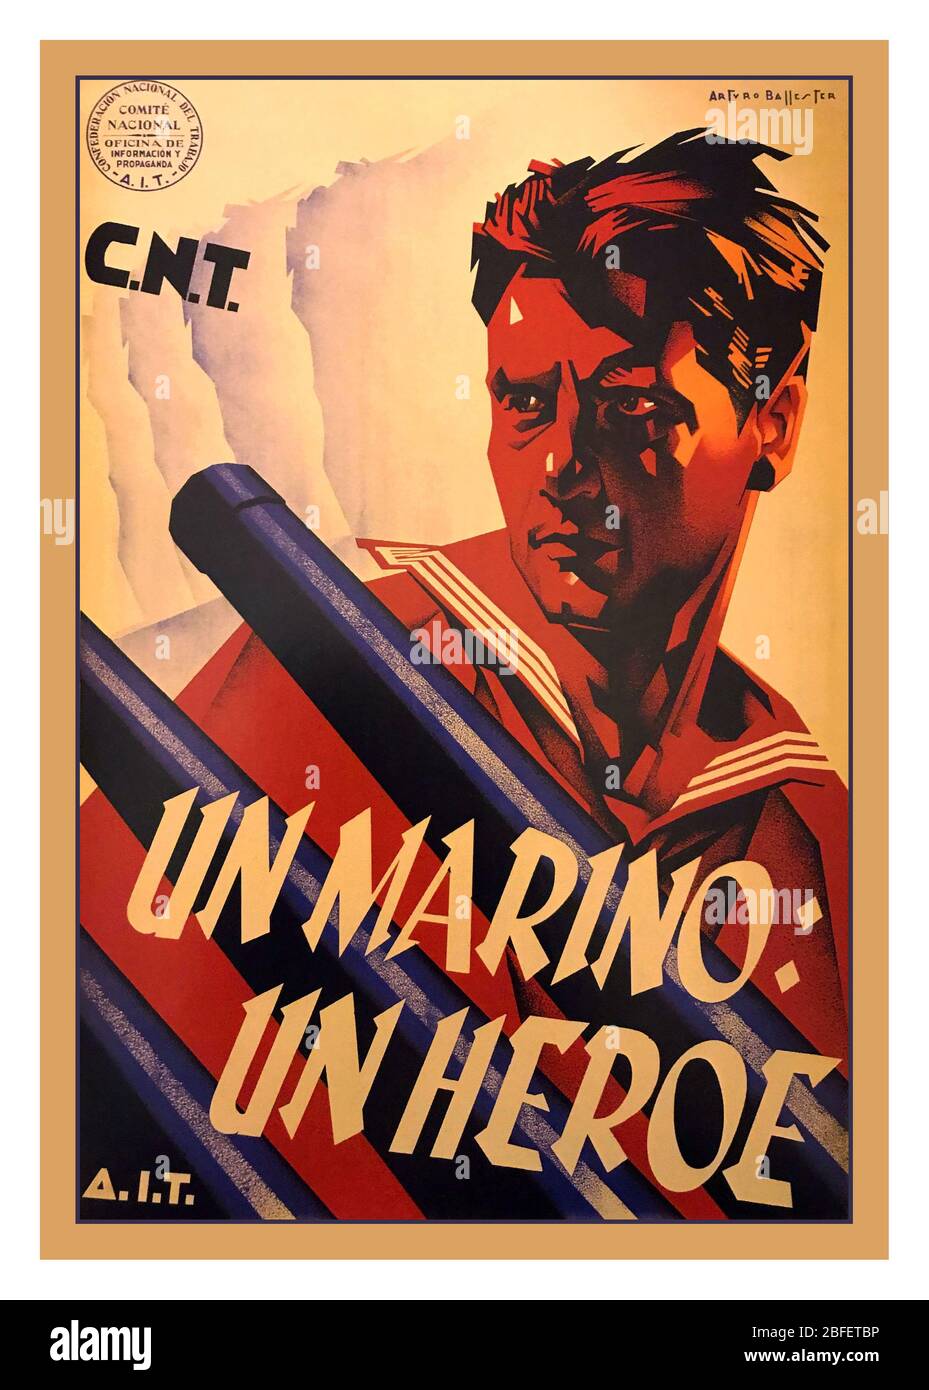 Vintage CNT Propaganda Poster für den spanischen Bürgerkrieg "EIN Seemann ein Held" (C.N.T Bürgerkrieg Plakat 1936) der spanische Bürgerkrieg (Spanisch: Guerra Civil Española) war ein Bürgerkrieg in Spanien von 1936 bis 1939 gekämpft. Die Republikaner, die der linken zweiten spanischen Republik treu sind, kämpften im Bündnis mit Anarchisten, der kommunistischen und syndikalistischen Sorte, gegen eine Revolte der Nationalisten, einer Allianz von Falangisten, Monarchisten, Konservativen und Katholiken, angeführt von einer militärischen Gruppe, unter der General Francisco Franco bald eine übergroße Rolle erlangte. .Confederación Nacional del Trabajo CNT Stockfoto